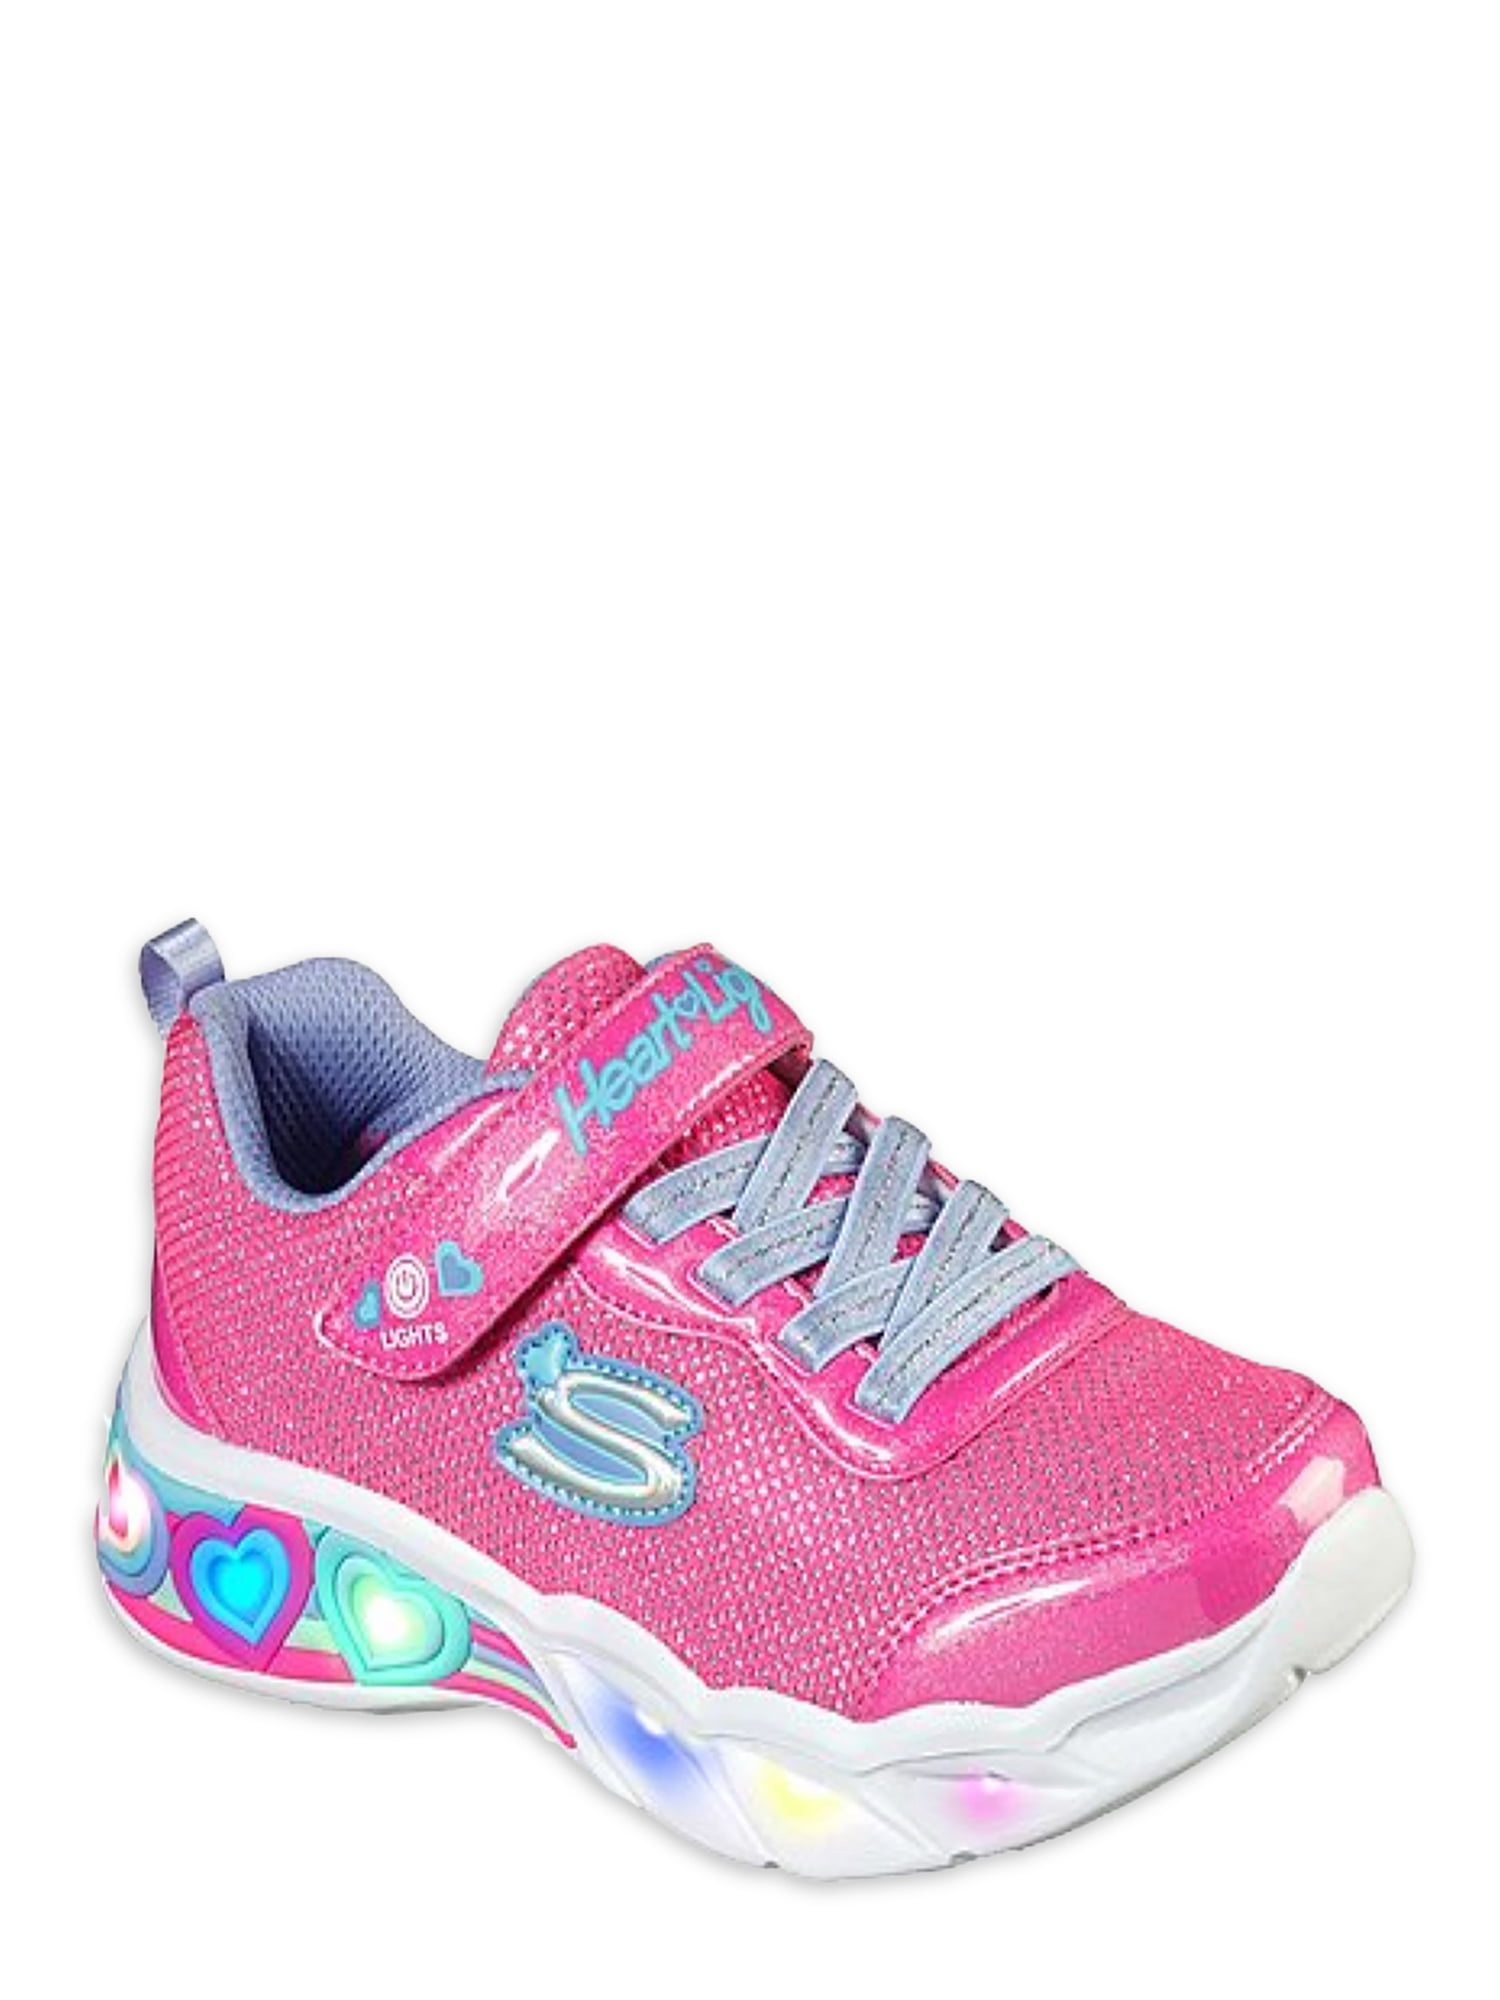 Go Run 600 - Viva Athletic Sneaker (Toddler Girls) Walmart.com